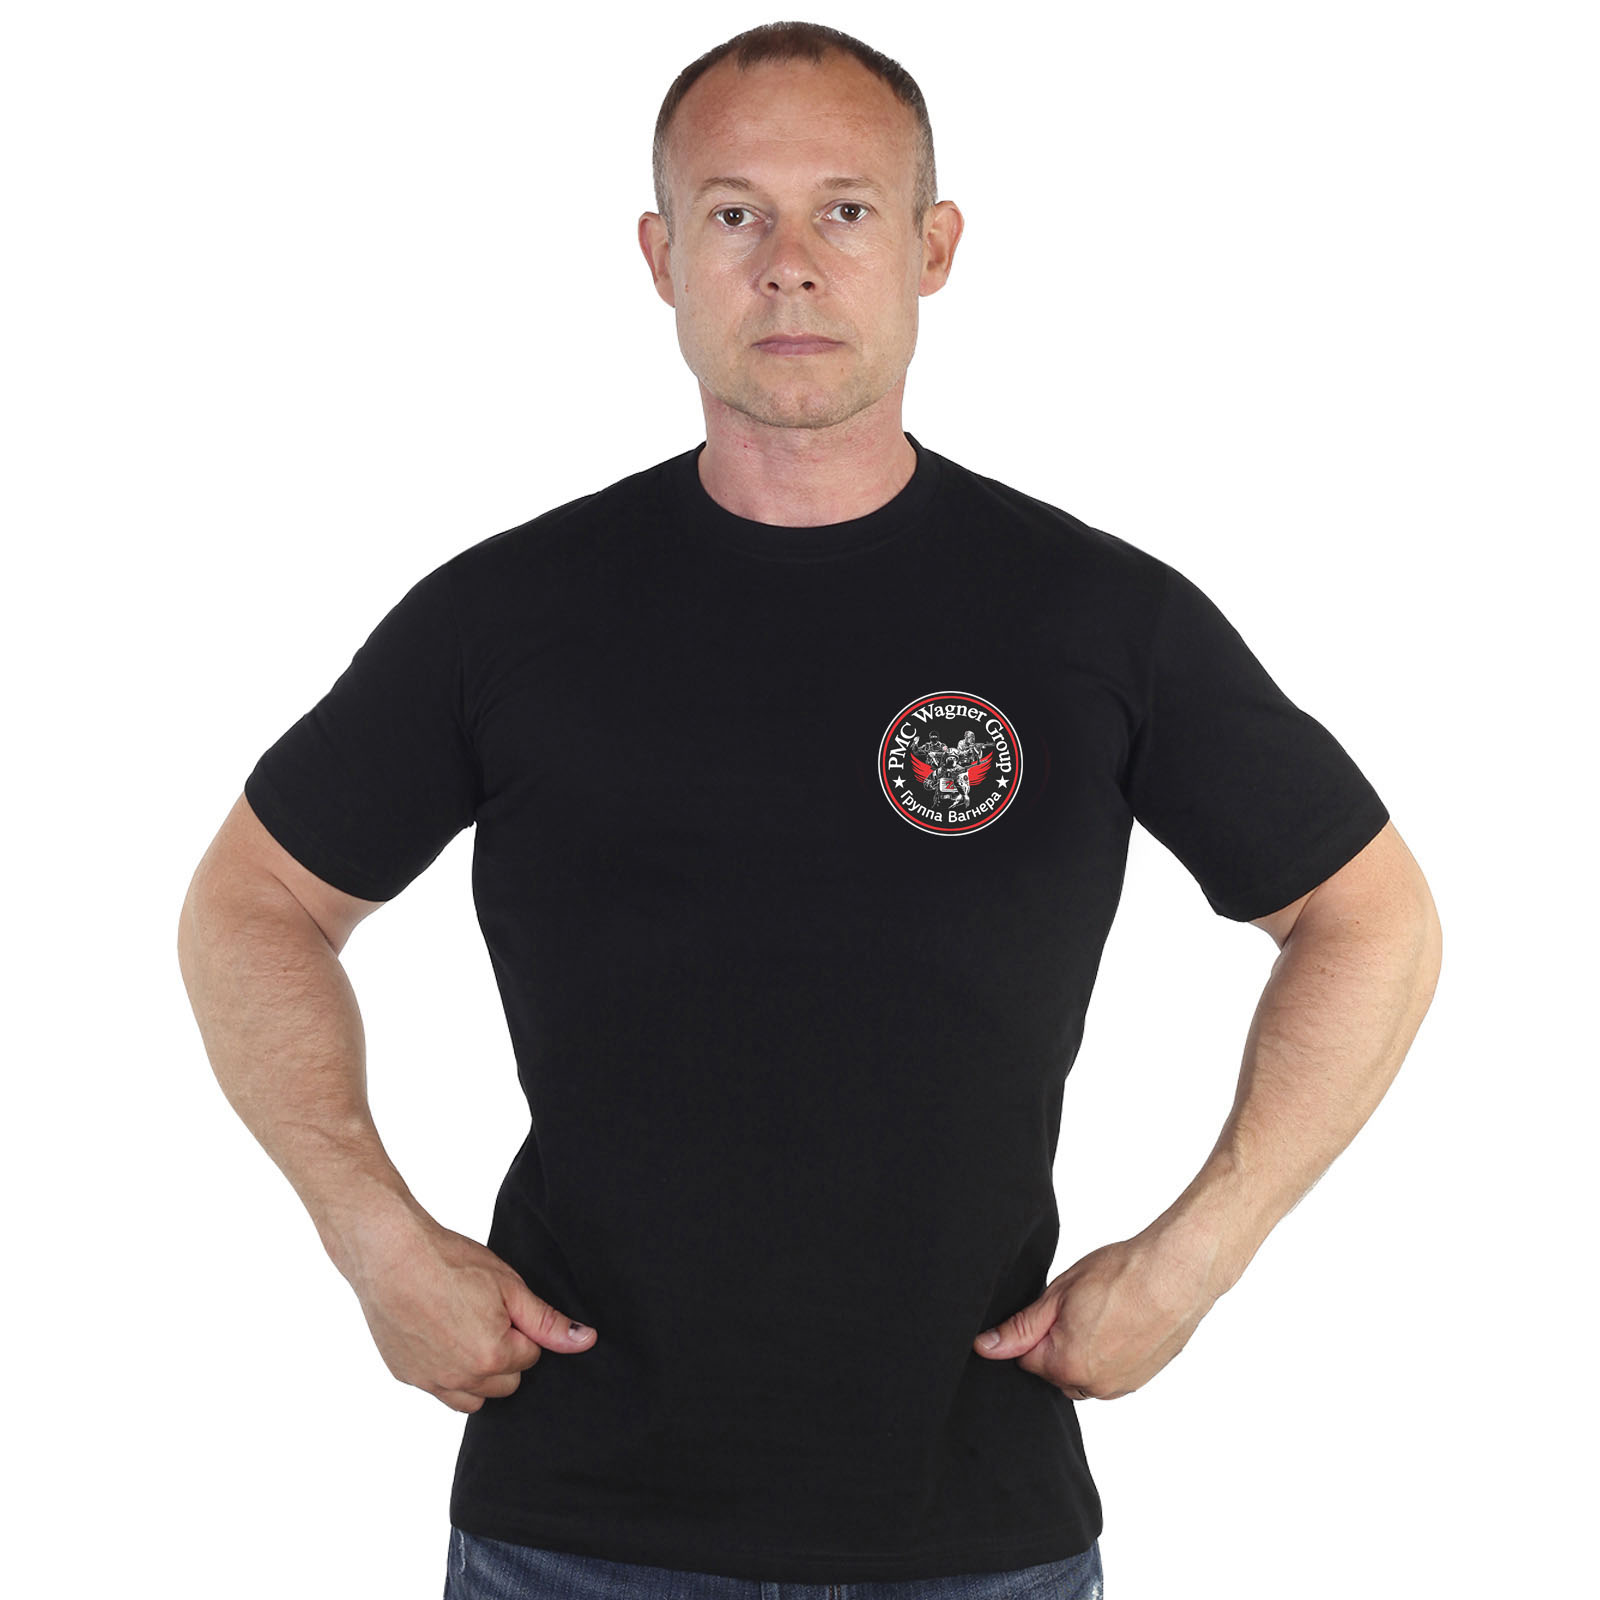 Чёрная футболка с термотрансфером ЧВК "Вагнер"